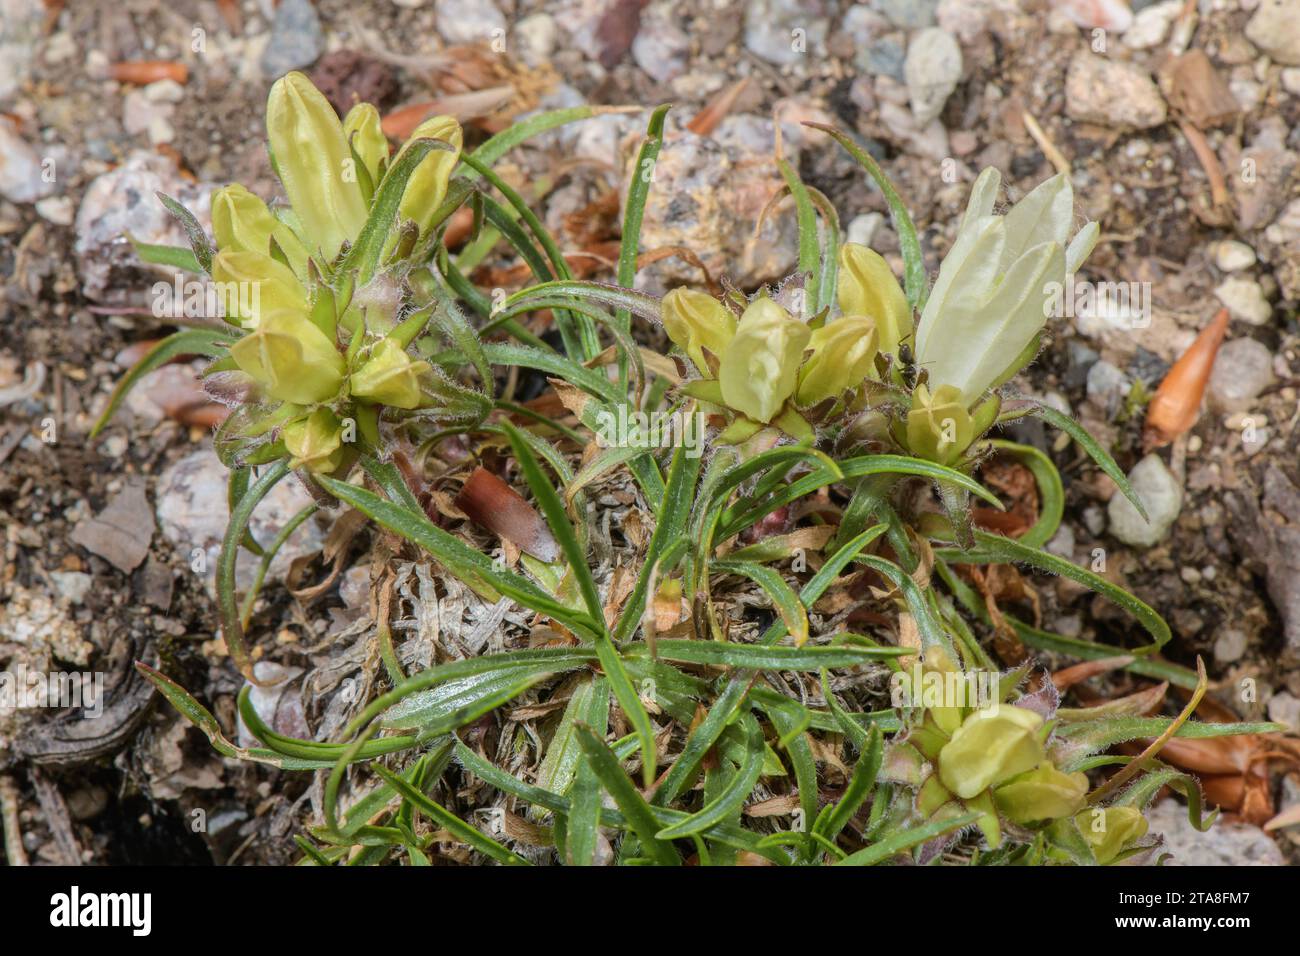 A bellflower-relative, Edraianthus niveus, in flower, from Bosnia-Herzegovina. Stock Photo